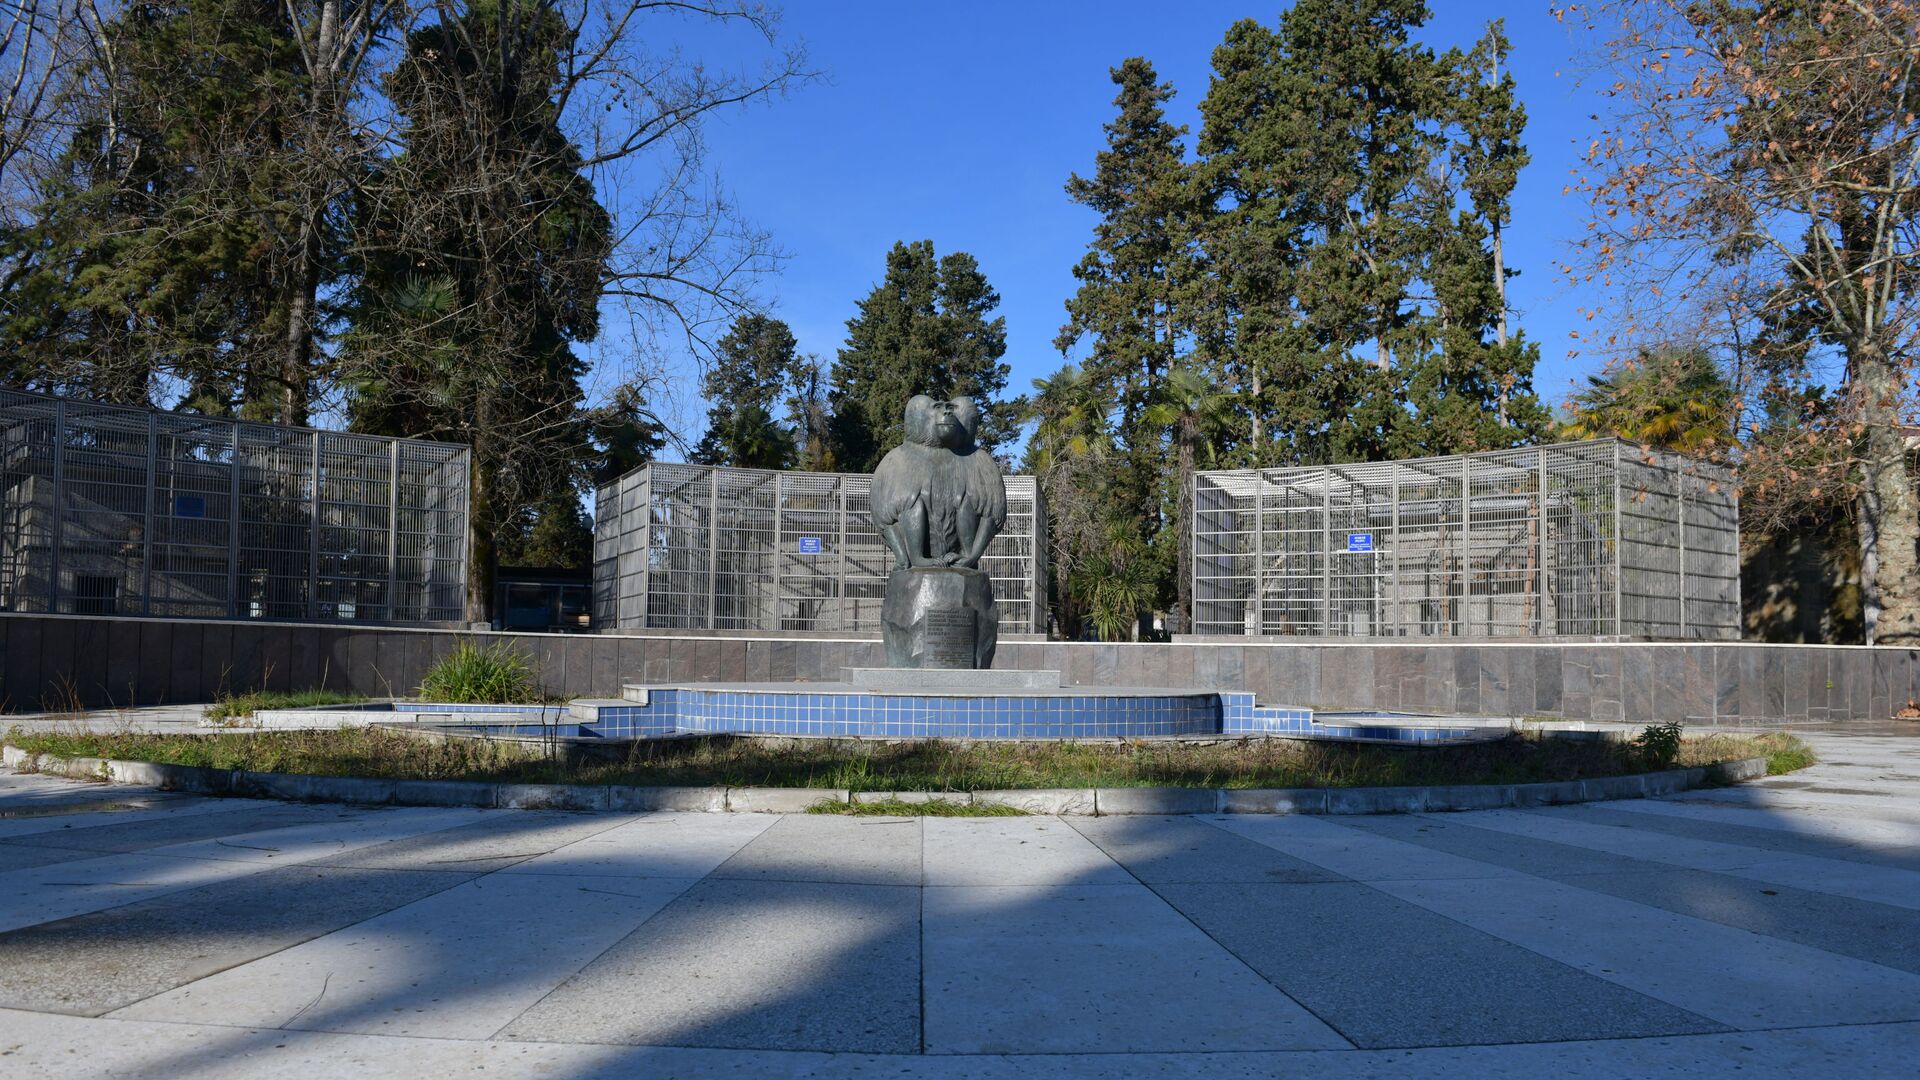 Памятник обезьяне на территории Сухумского питомника обезьян - Sputnik Абхазия, 1920, 25.07.2021